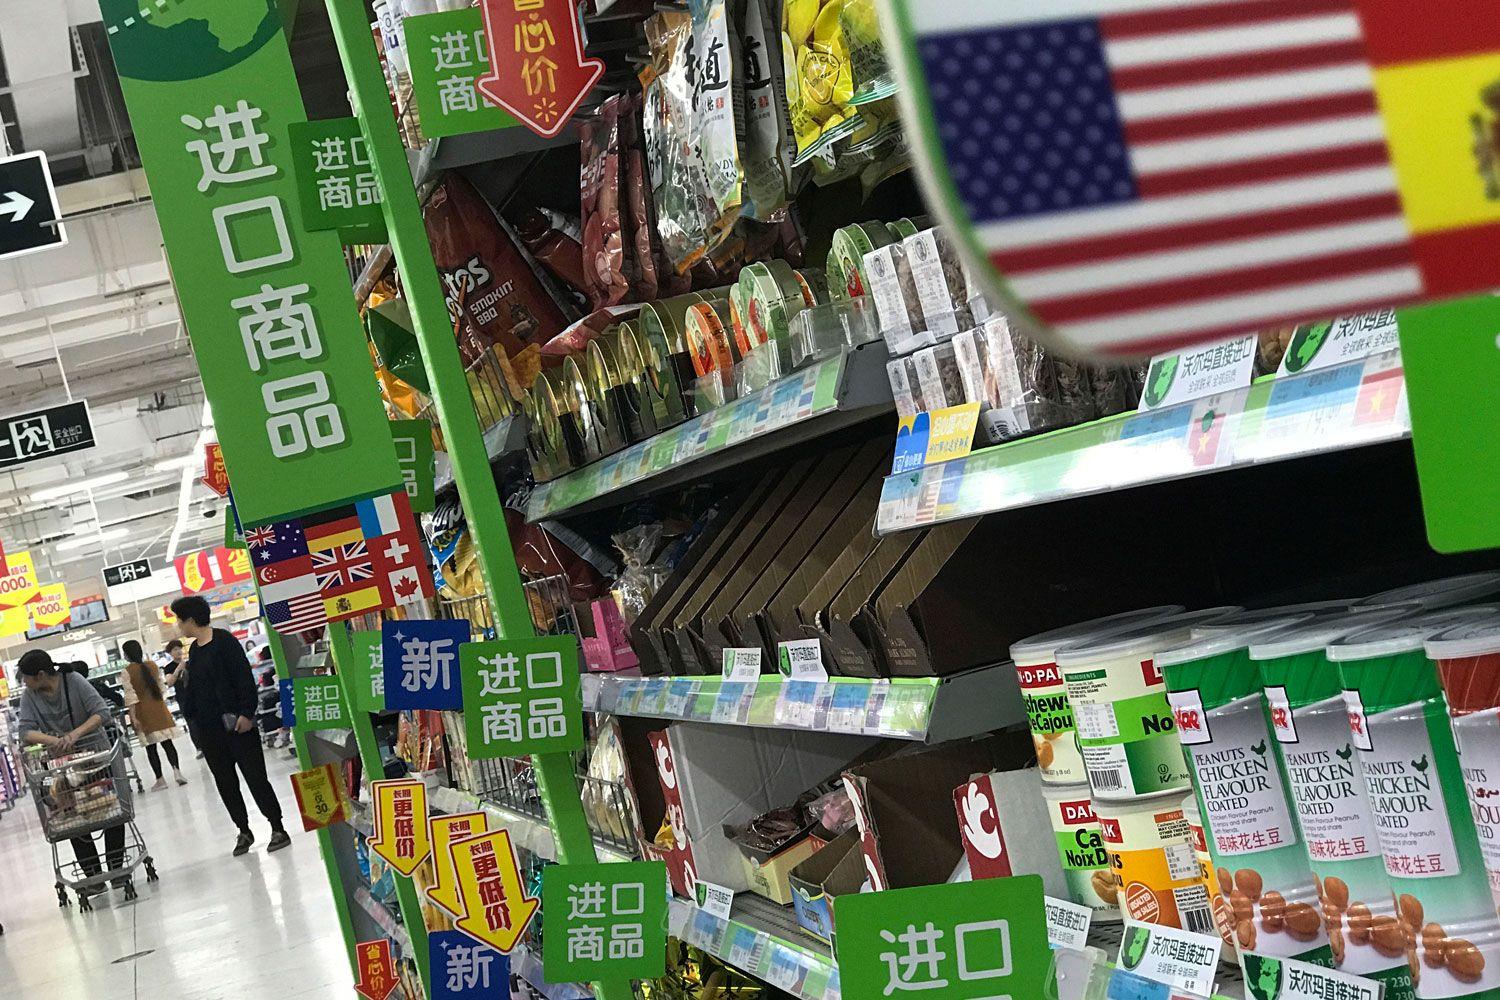 659 amerikanska varor i Kina ska få tullavgifter, meddelade Kina som ett direkt svar på Trumps nya tullbeslut.